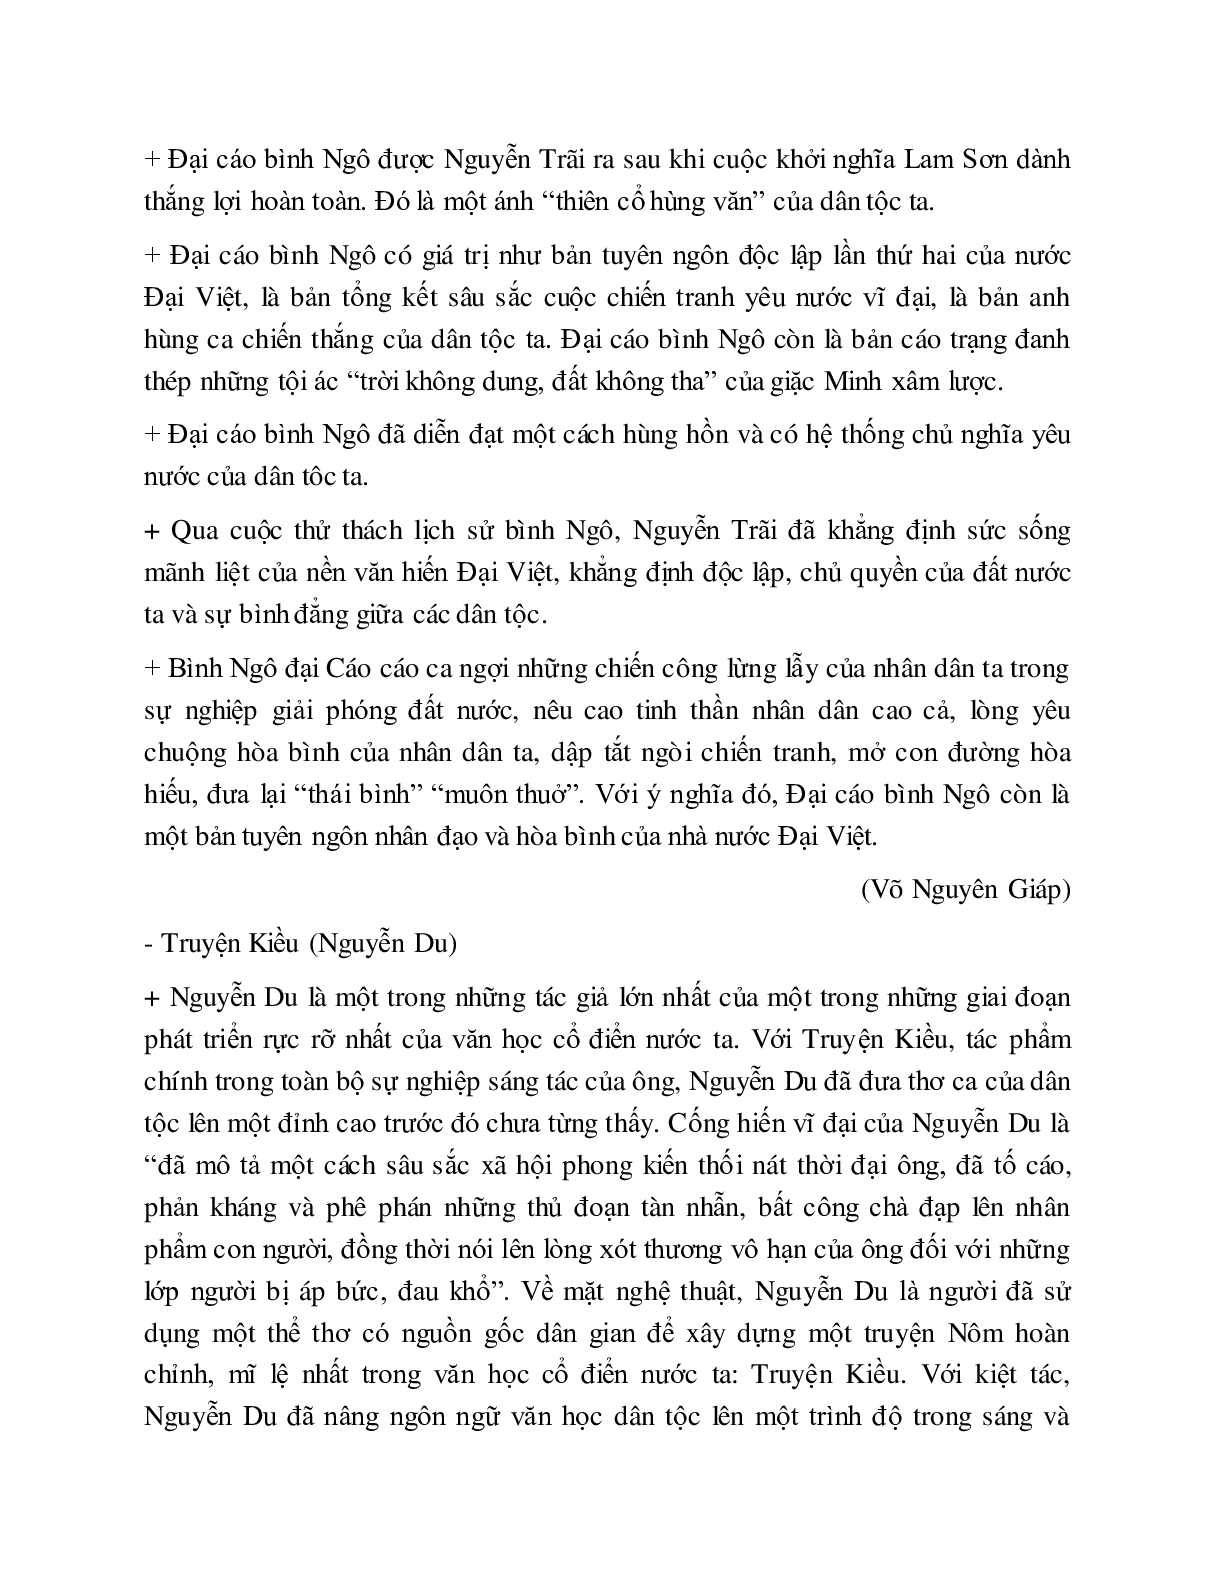 Soạn bài Tổng quan văn học Việt Nam - ngắn nhất Soạn văn 10 (trang 9)